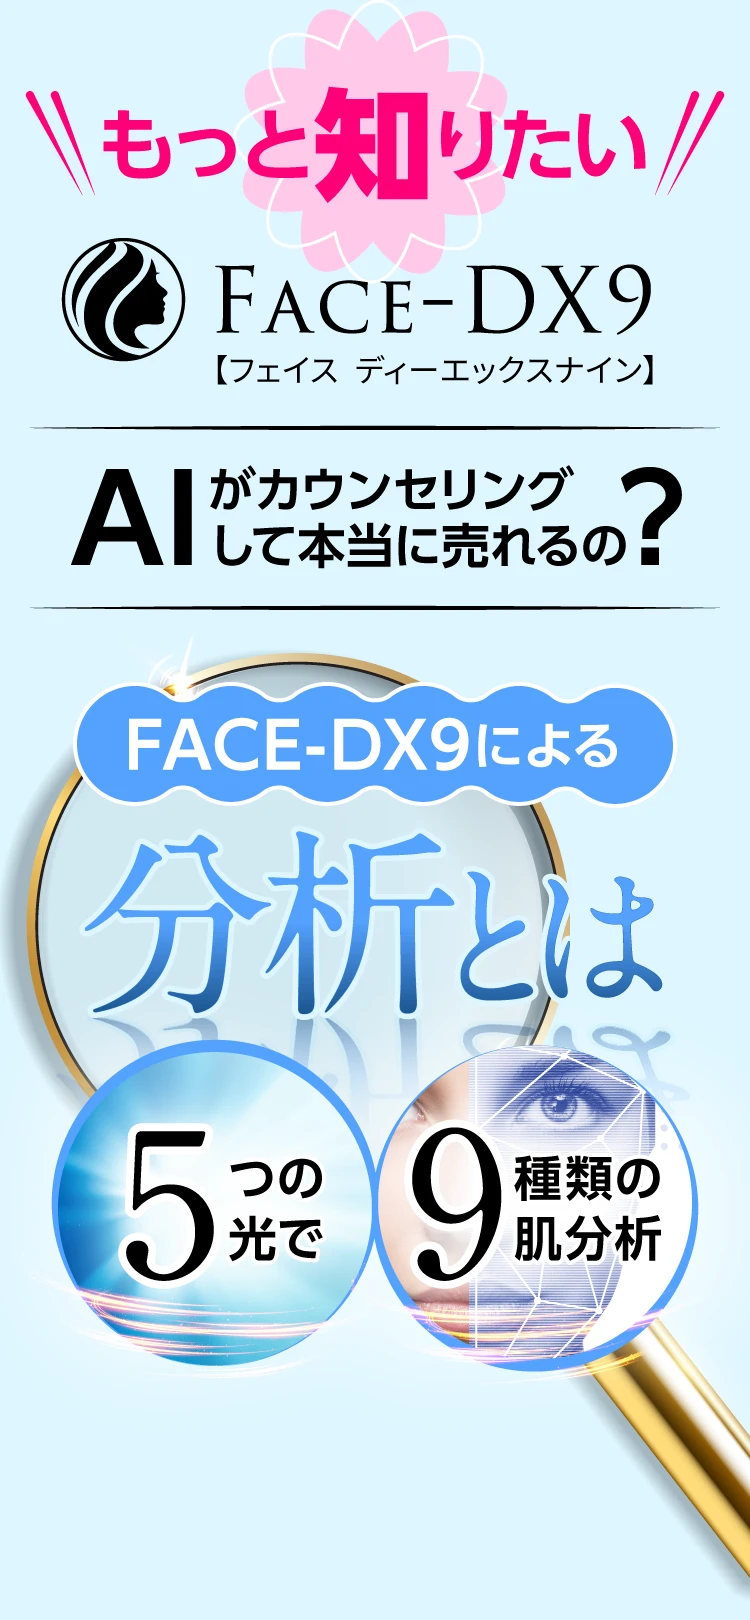 もっと知りたい!FACE-DX9